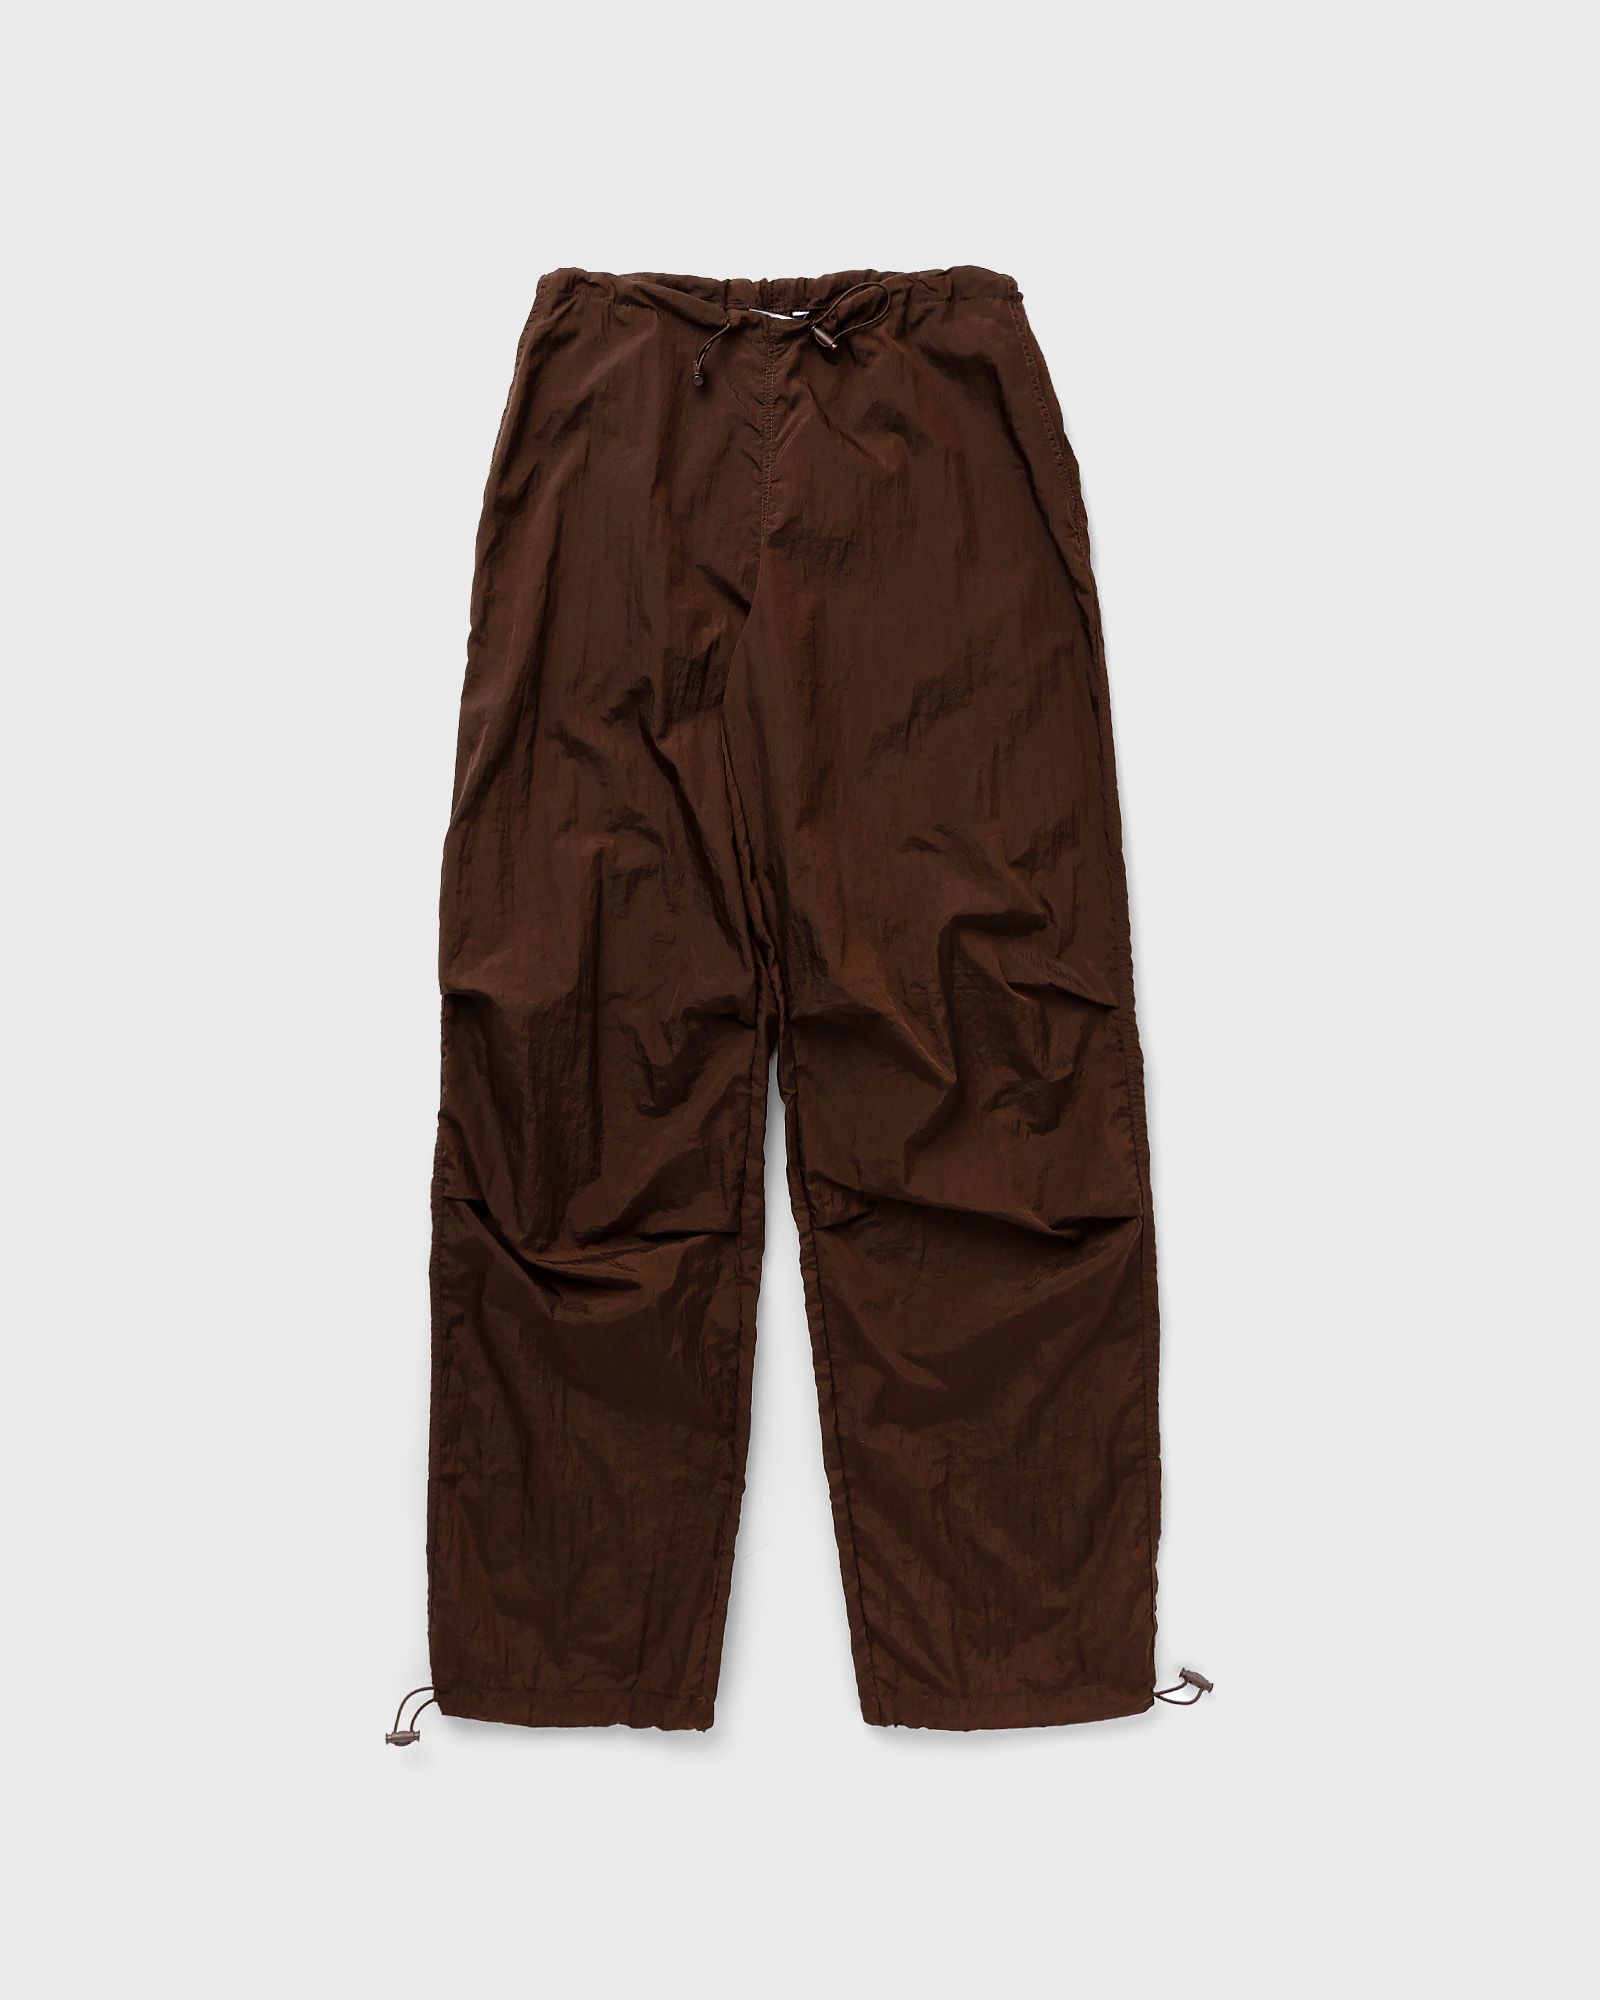 Envii - enhonolulu pants 7023 women casual pants brown in größe:xs